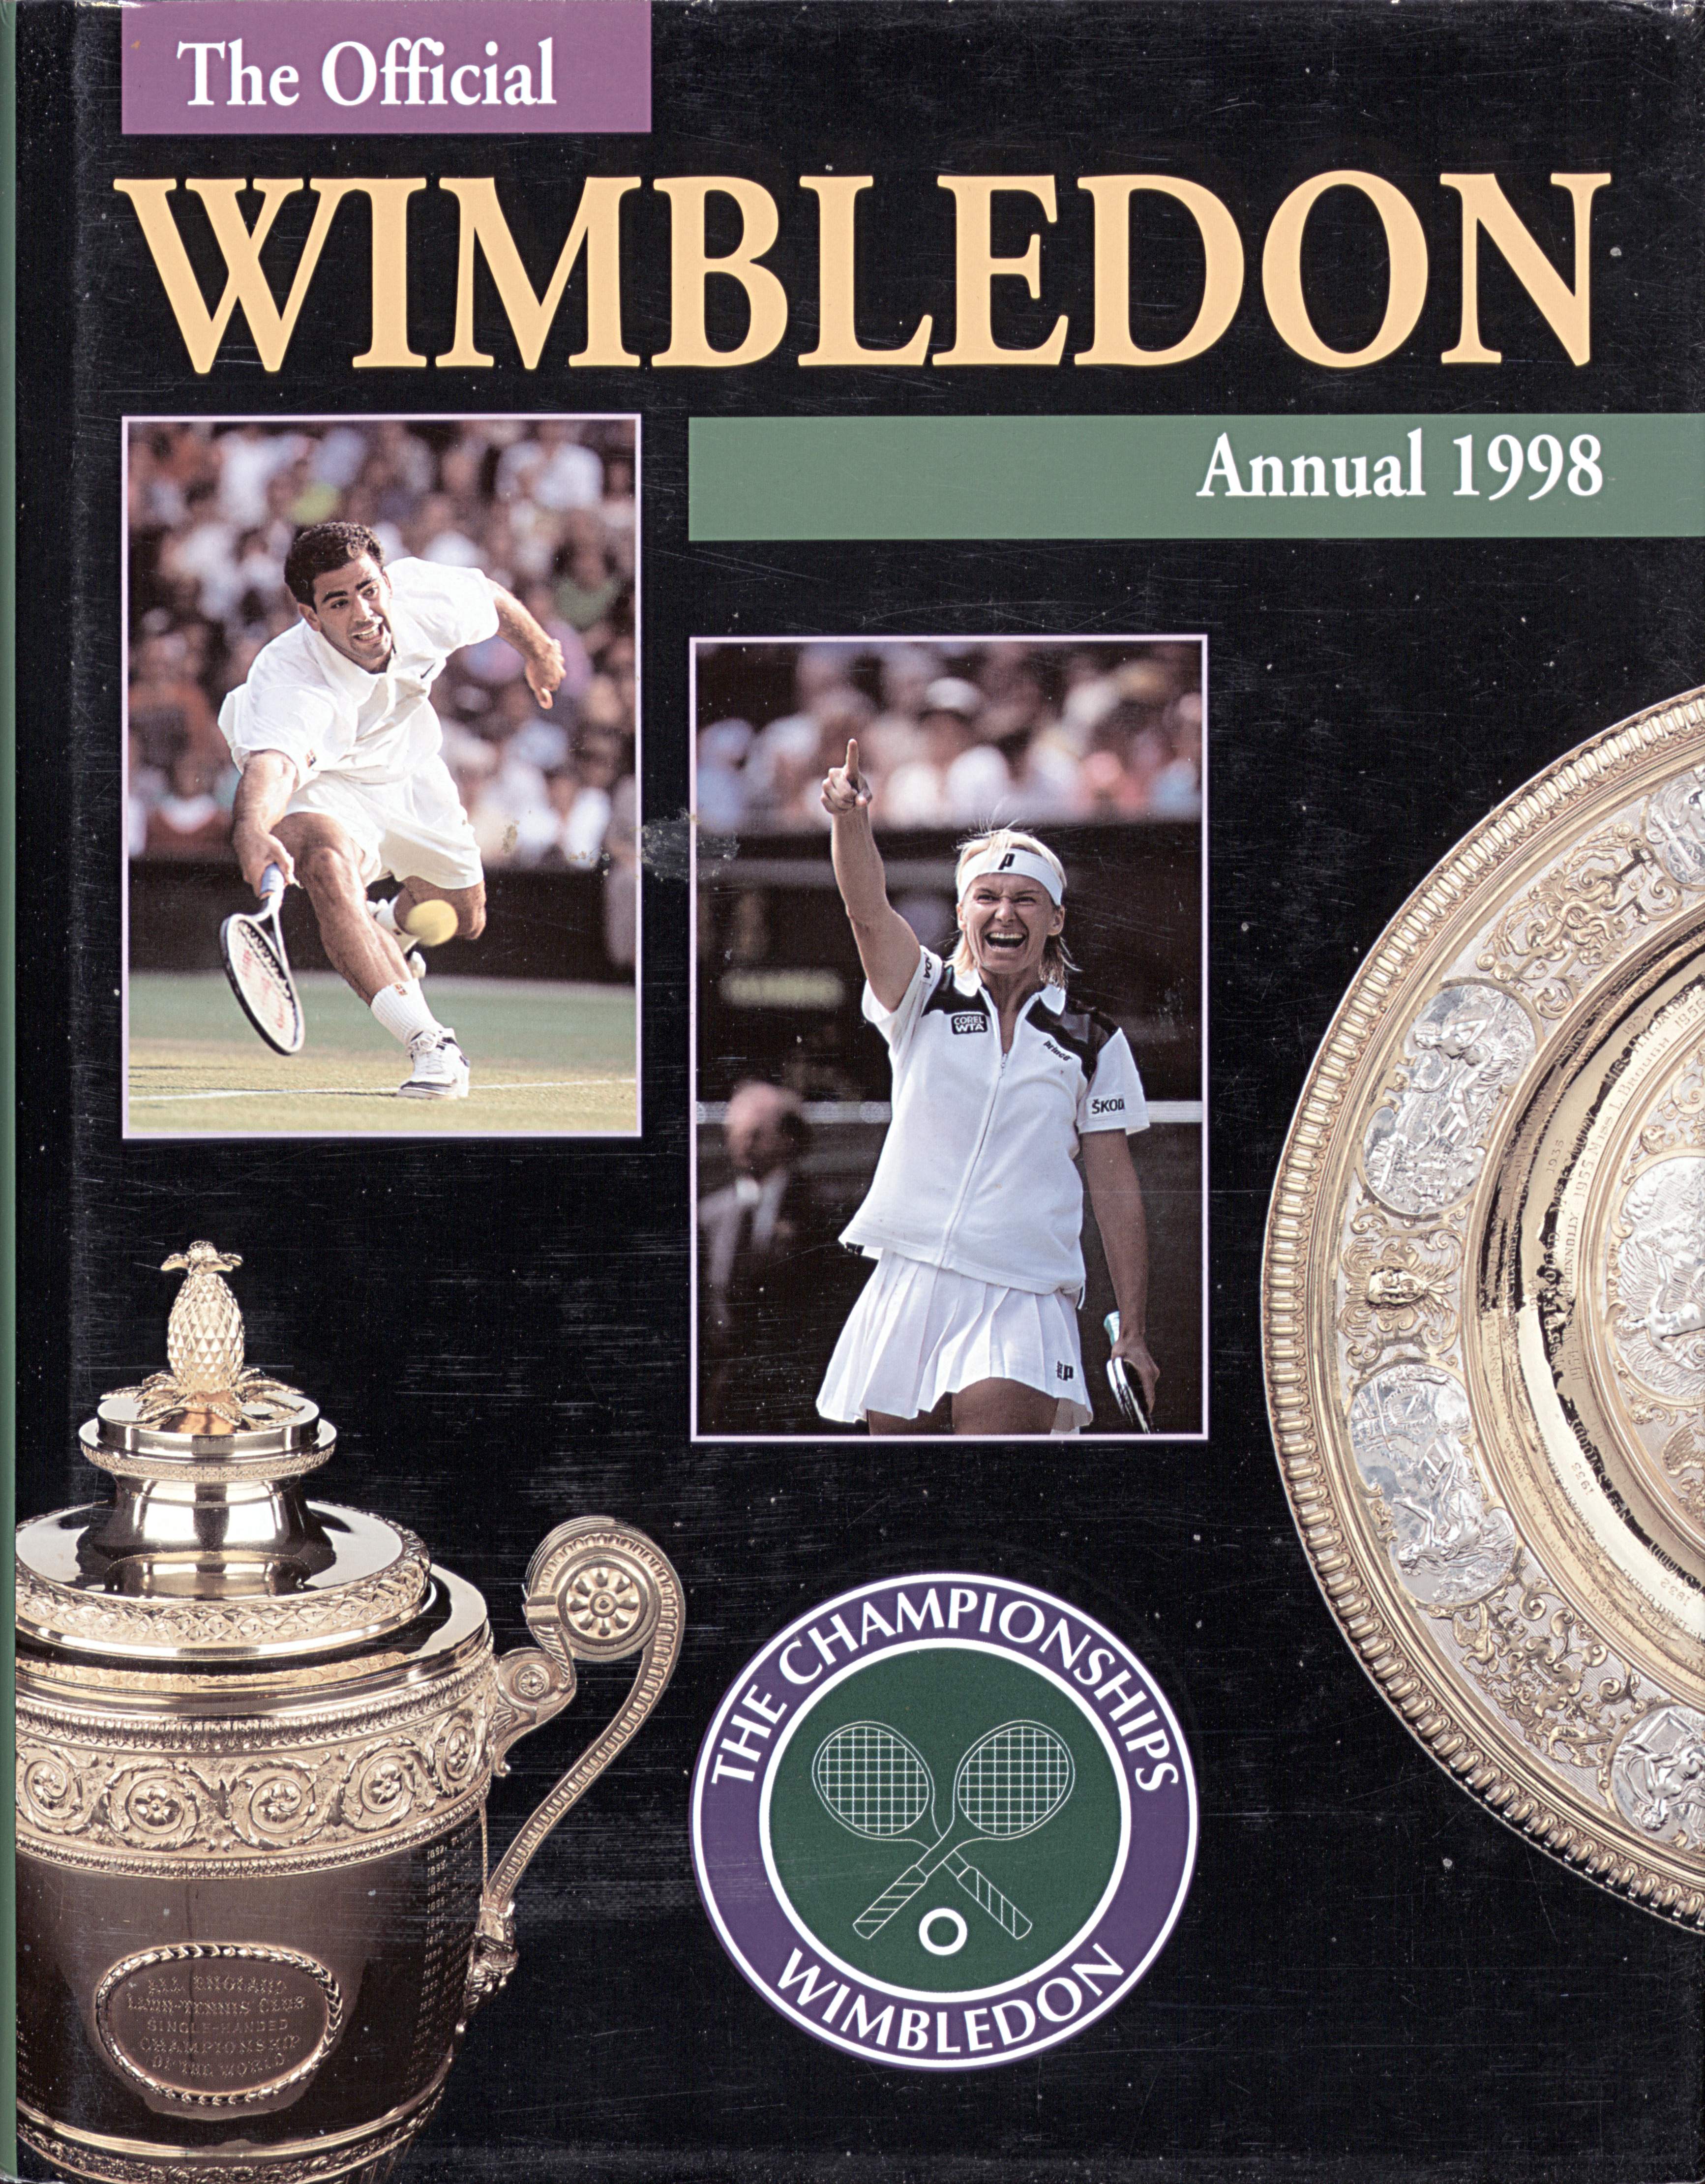 The Championships Wimbledon 1998